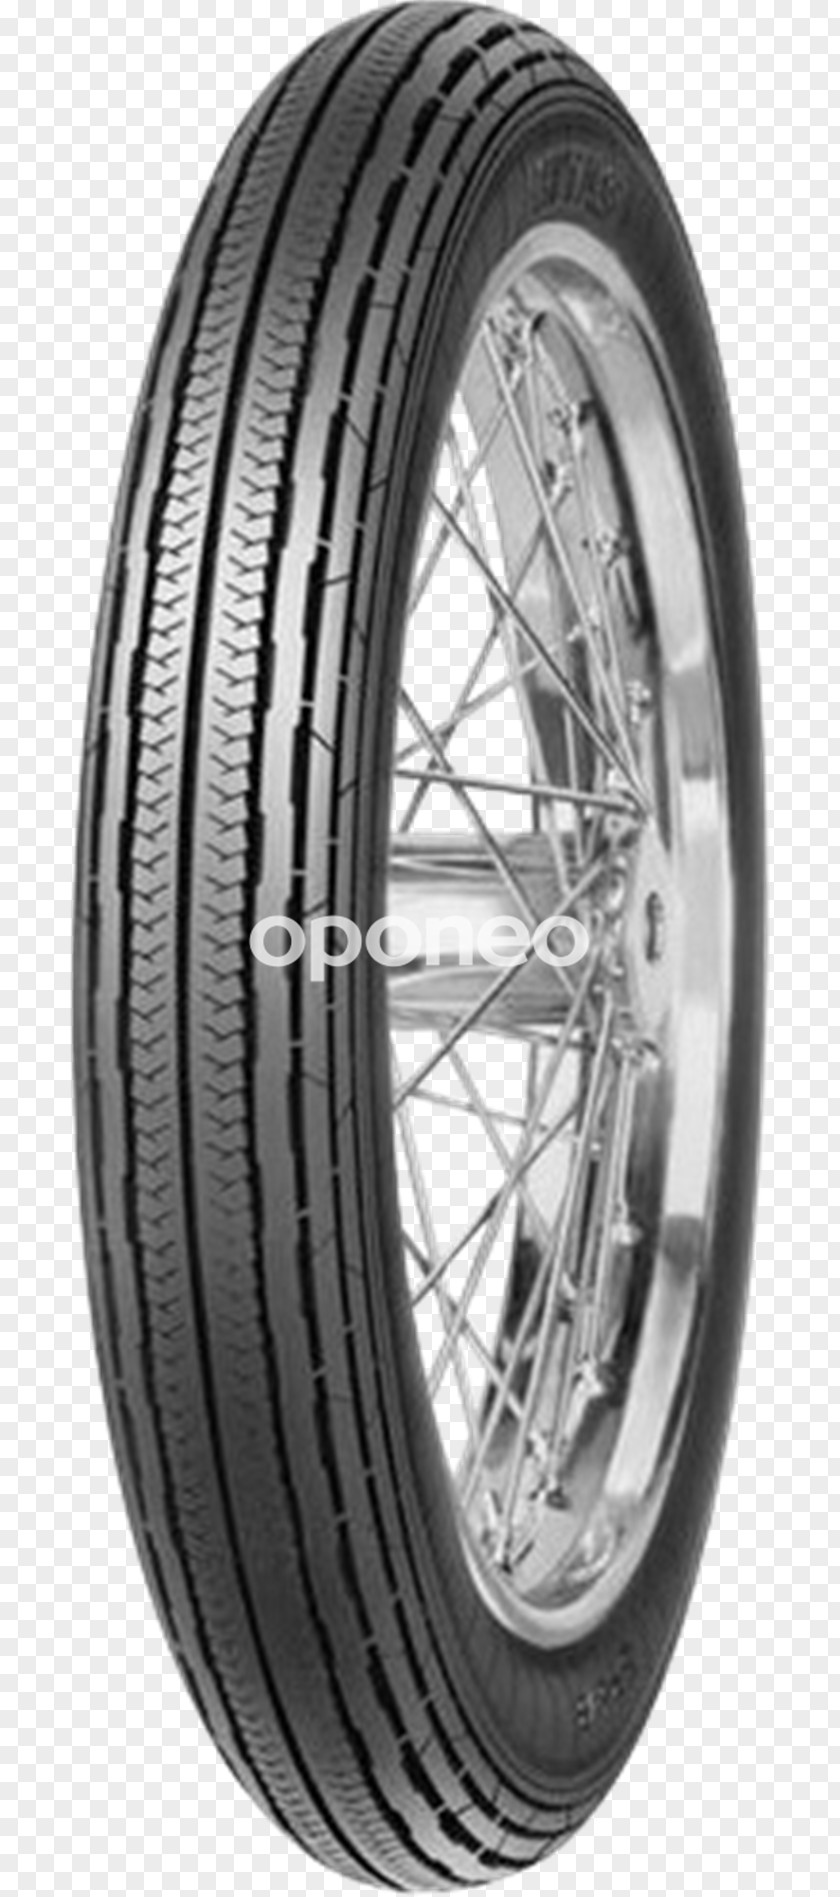 Motorcycle Tires Wheel Binnenband PNG